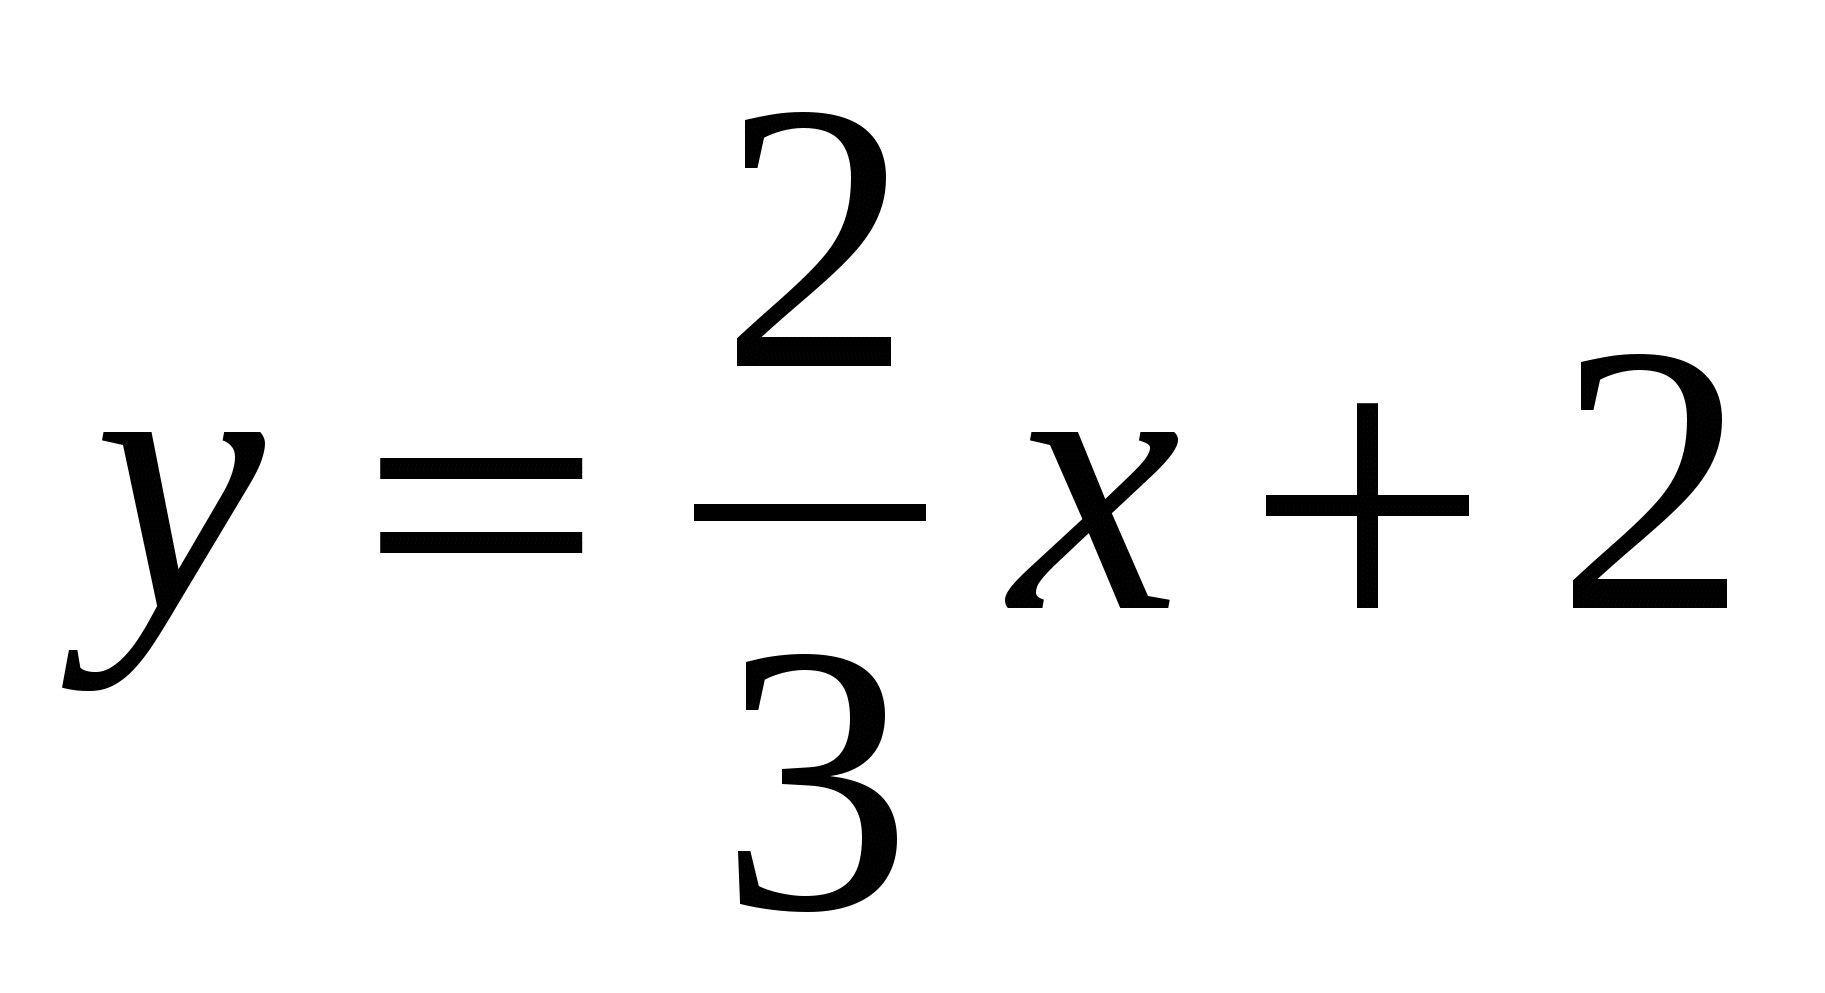 Математика “ Сызықтық функция графигінің өзара орналасуы” (6-сынып сабақ жоспары)